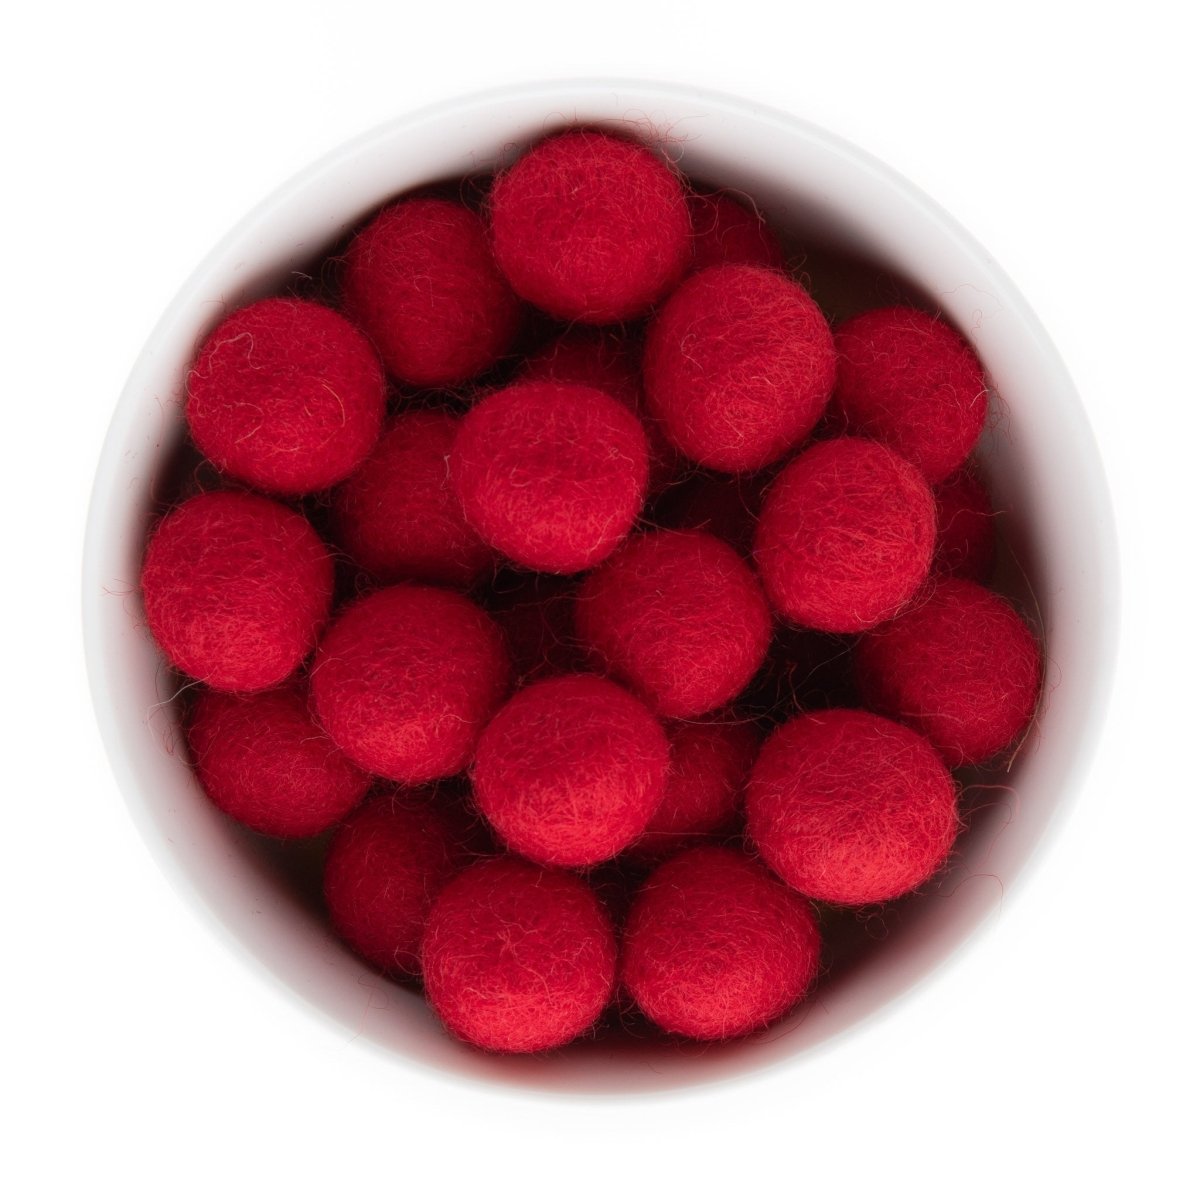 Felt & Crochet Beads Felt Balls 22mm Cherry Red from Cara & Co Craft Supply